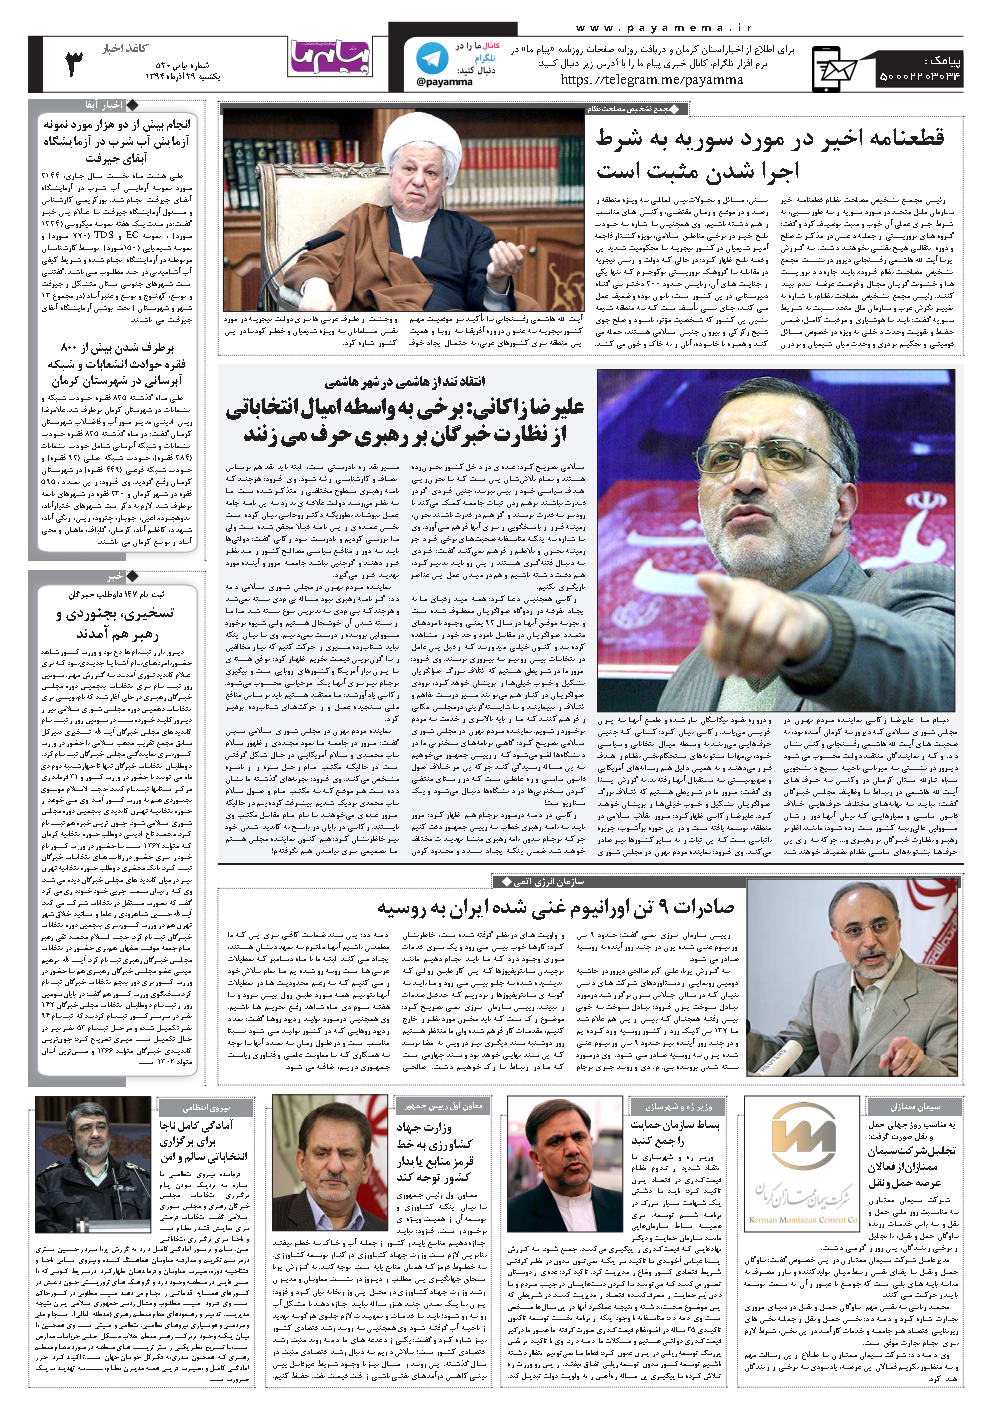 انتقاد تند از هاشمی در شهر هاشمی علیرضا زاکانی: برخی به واسطه امیال انتخاباتی از نظارت خبرگان بر رهبری حرف می زنند